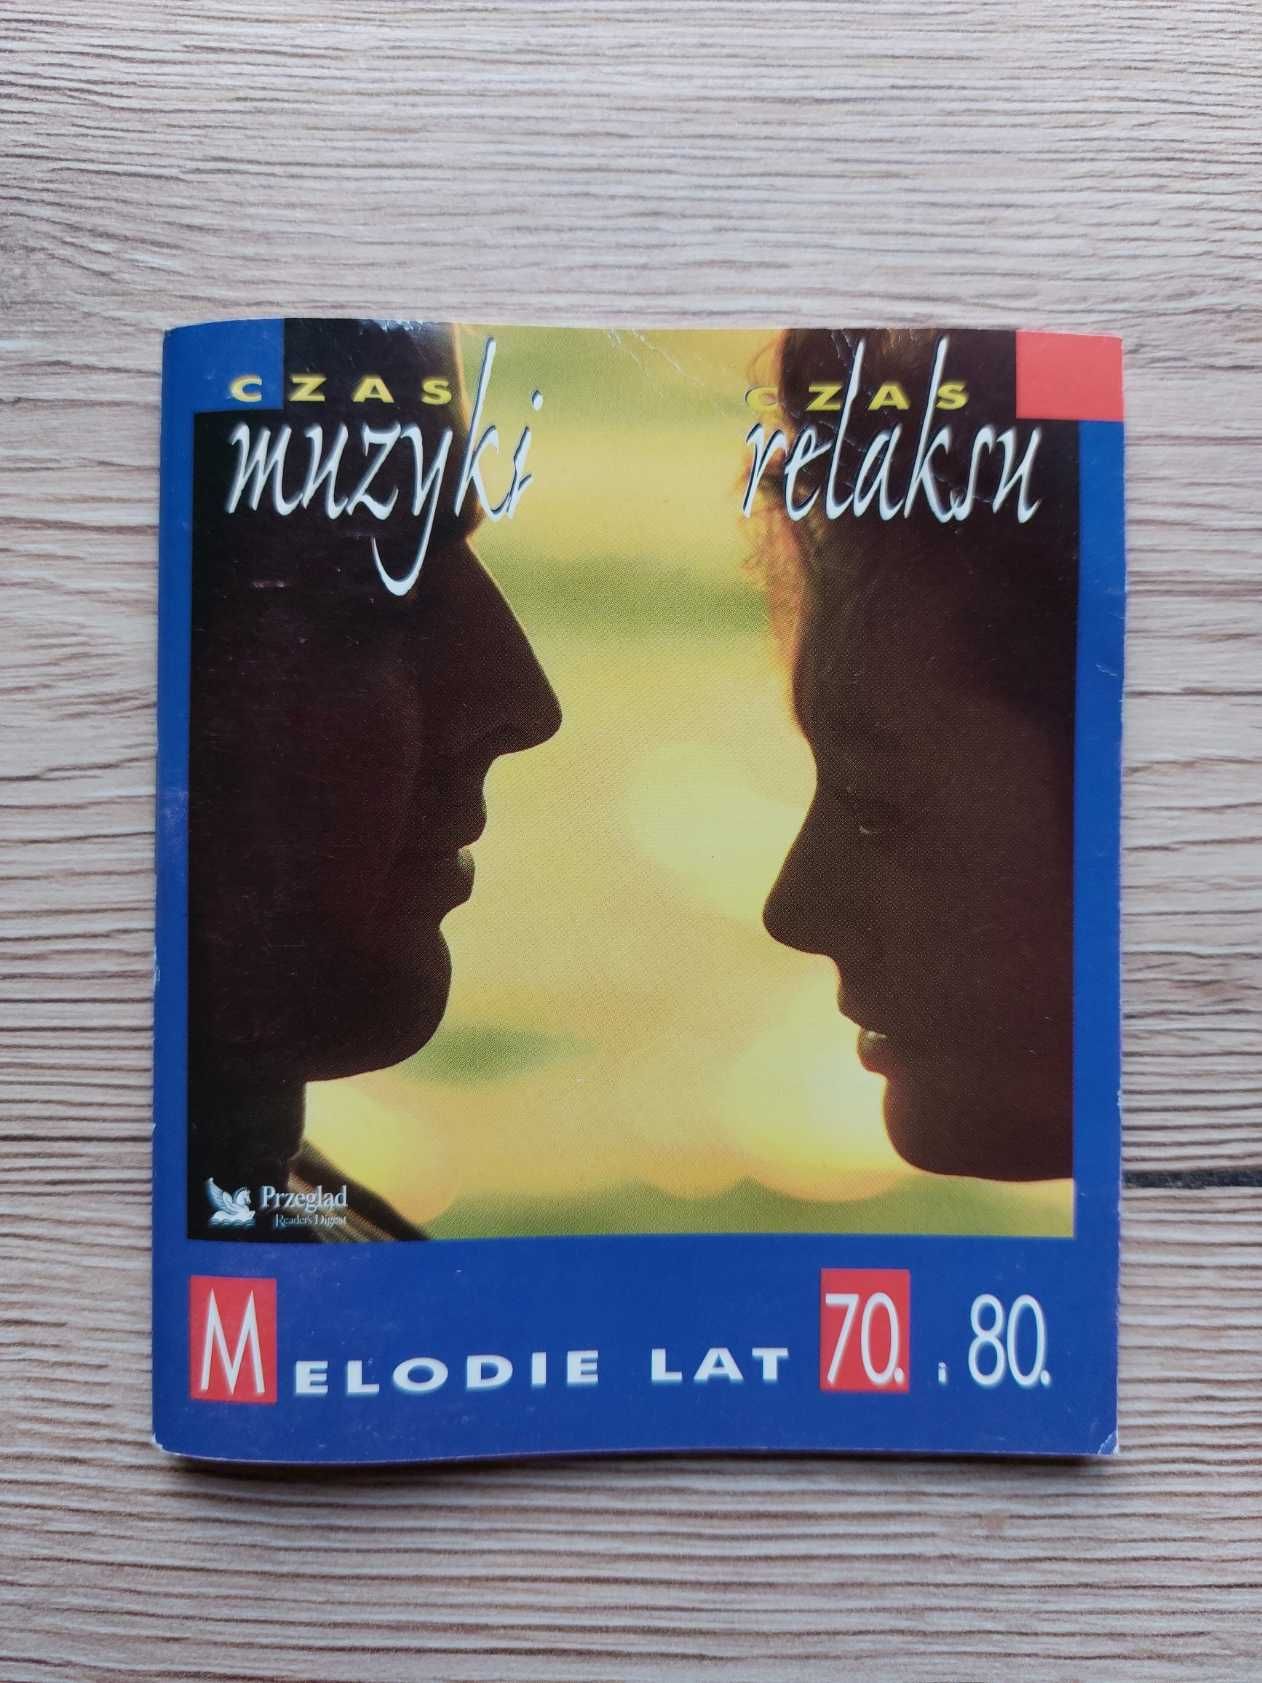 Melodie lat 70 i 80- czas muzyki, czas relaksu -kasety OKAZJA!!!